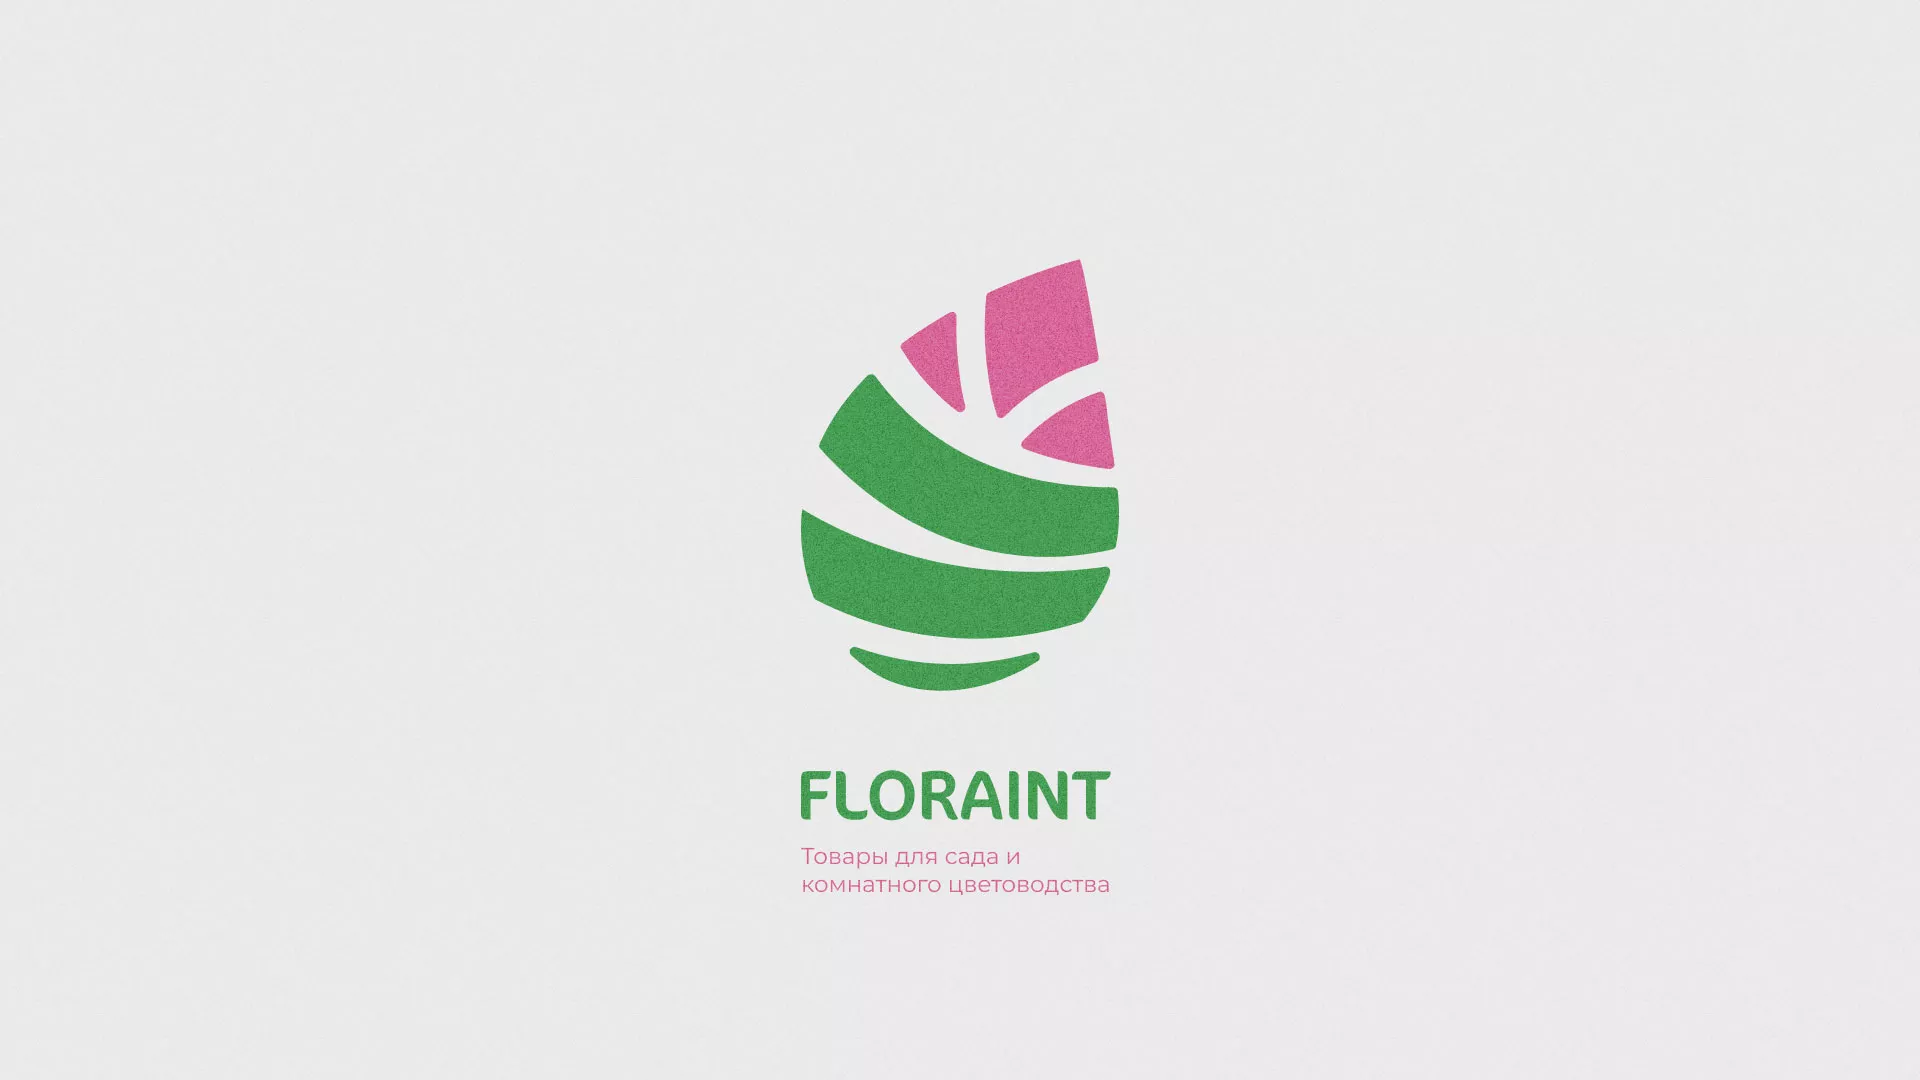 Разработка оформления профиля Instagram для магазина «Floraint» в Мамадыше